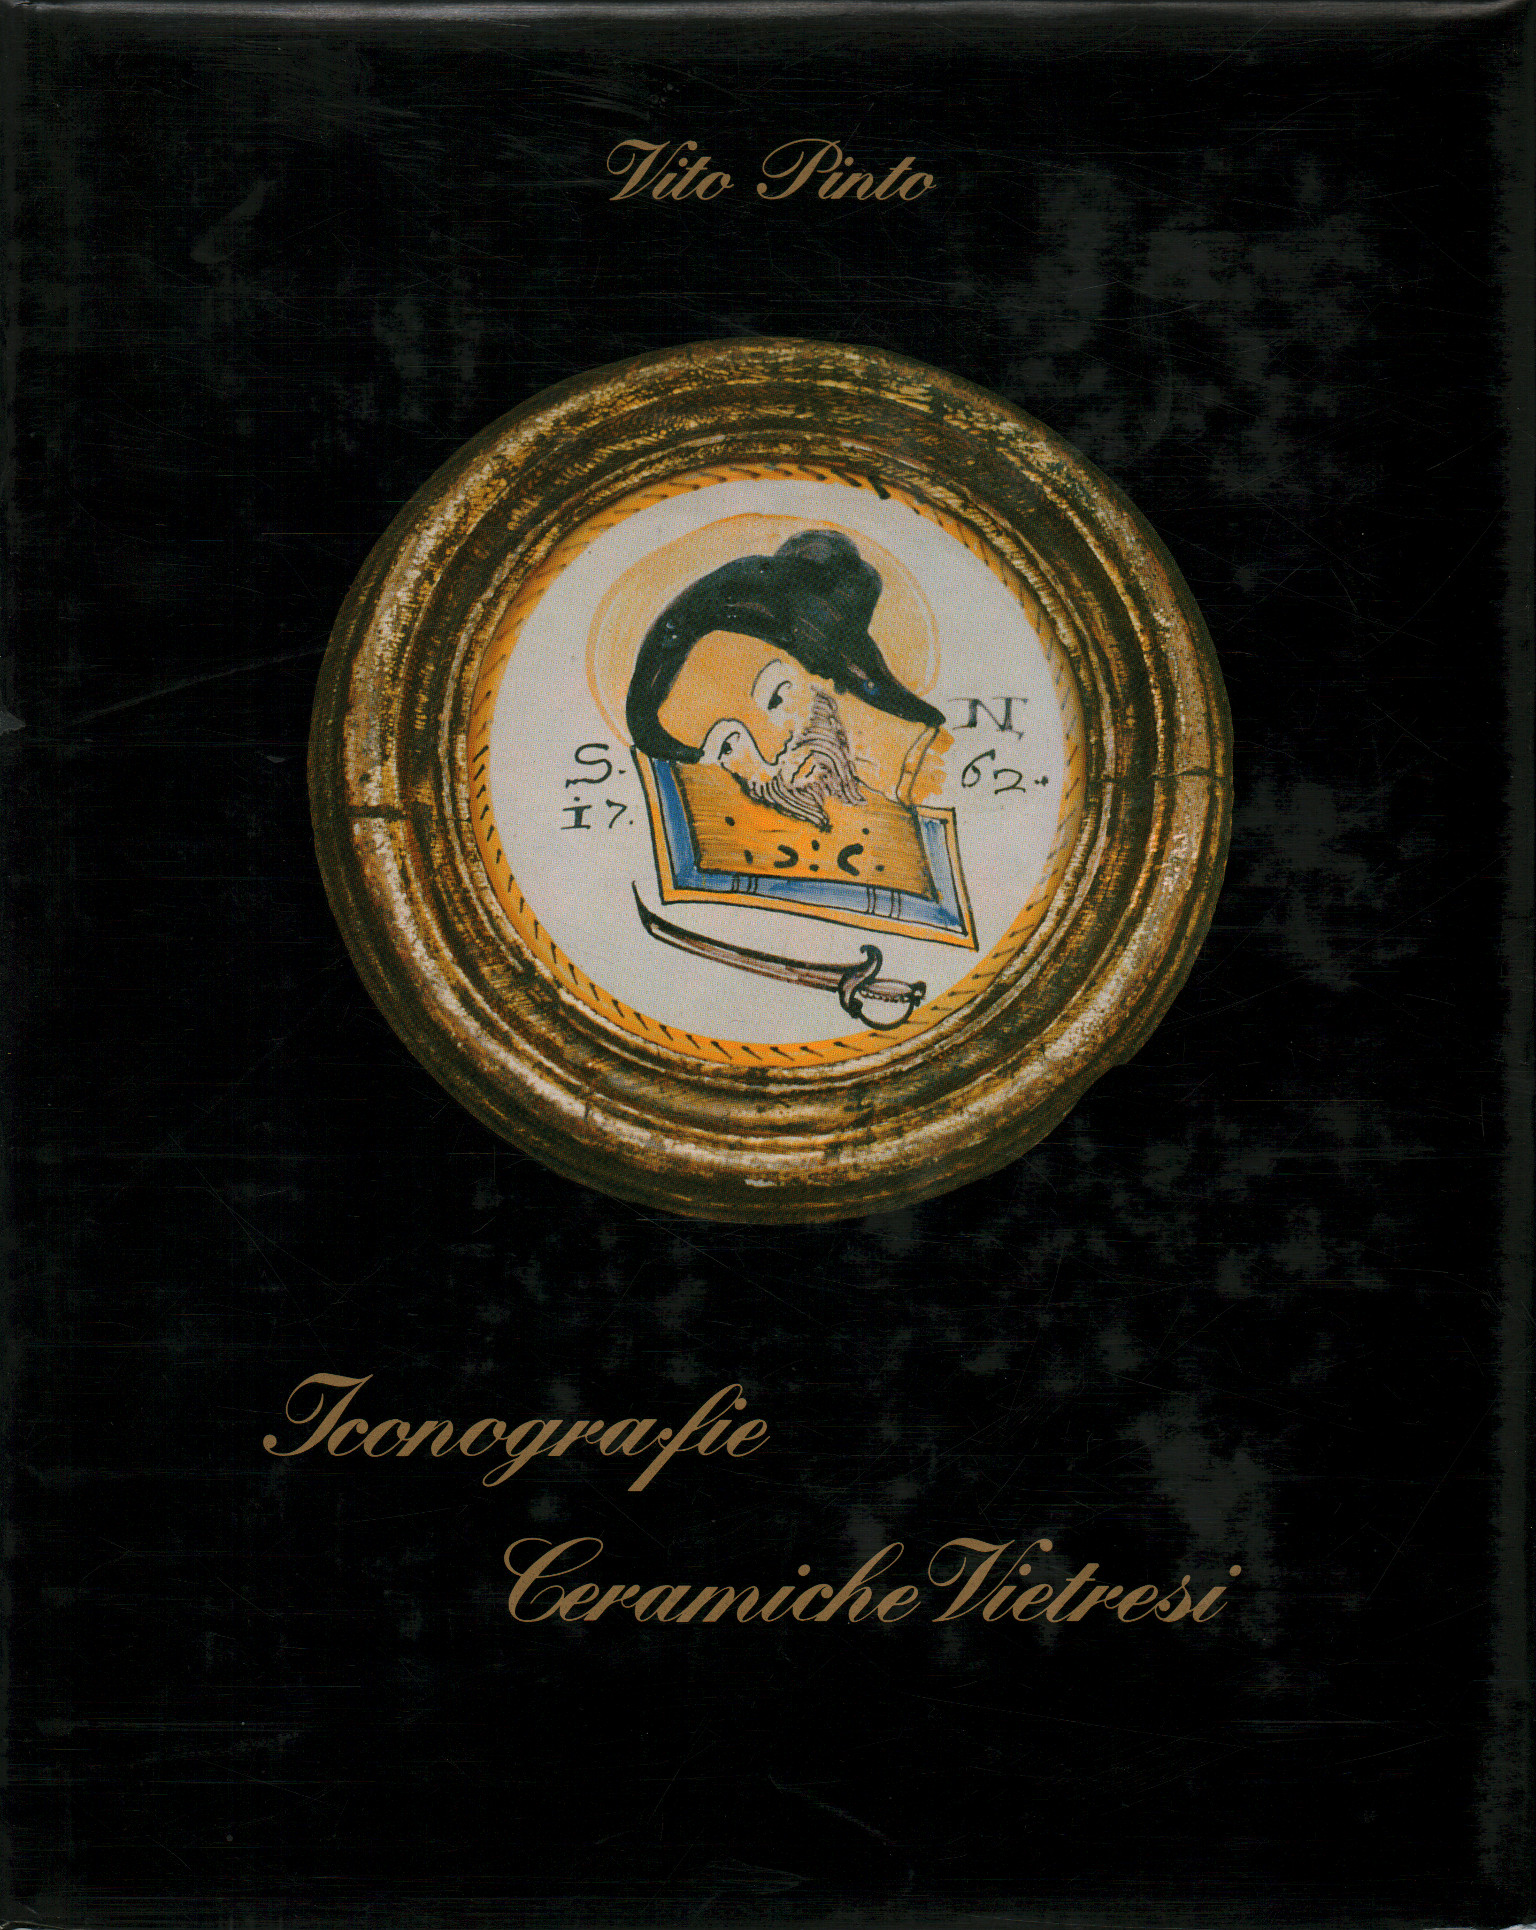 Vietri ceramic iconography, Vito Pinto